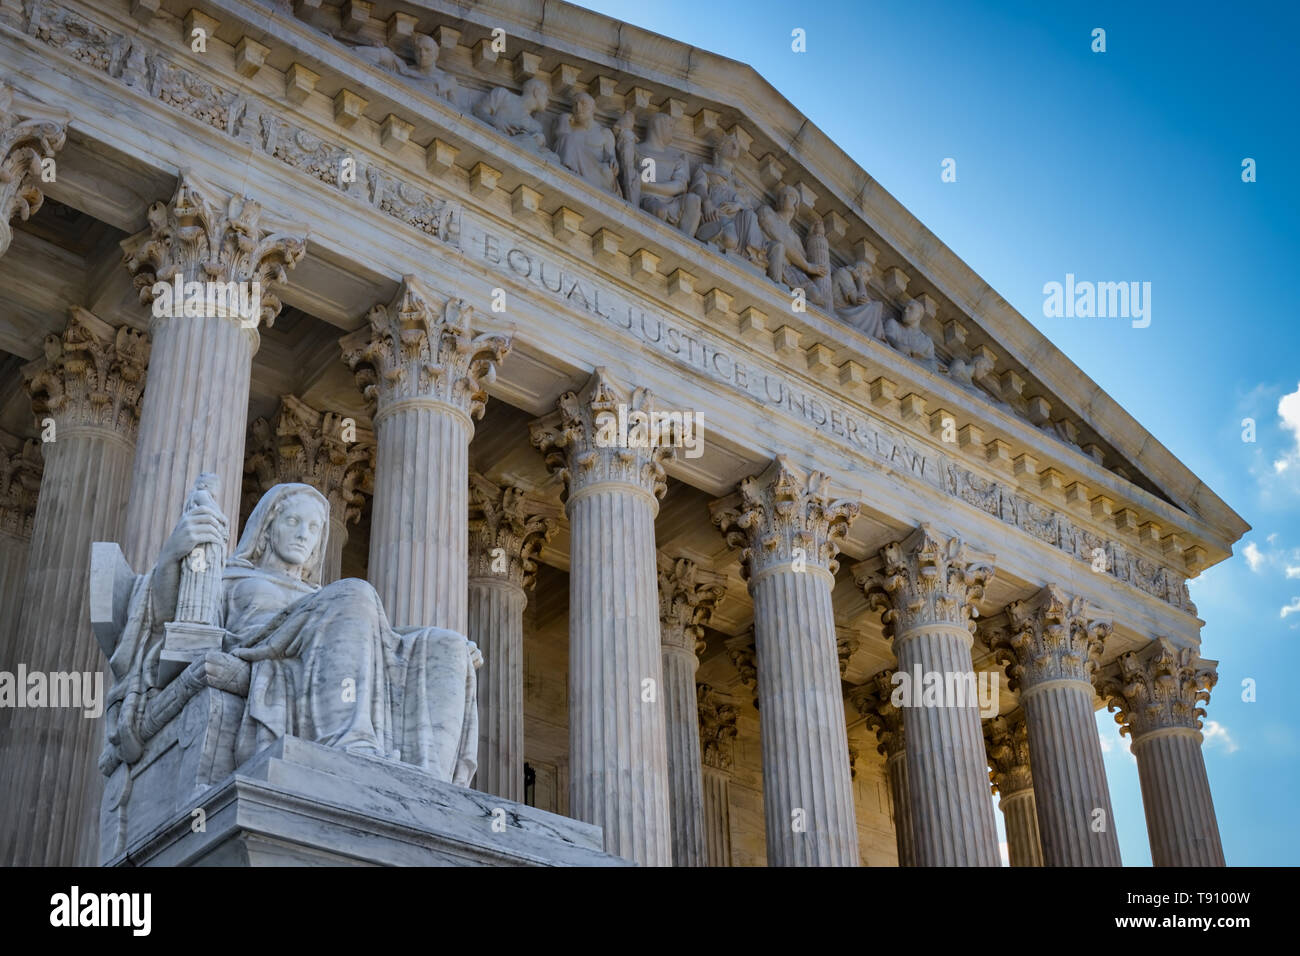 Une journée d'été en face de l'Édifice de la Cour suprême des Etats-Unis à Washington, DC. Banque D'Images